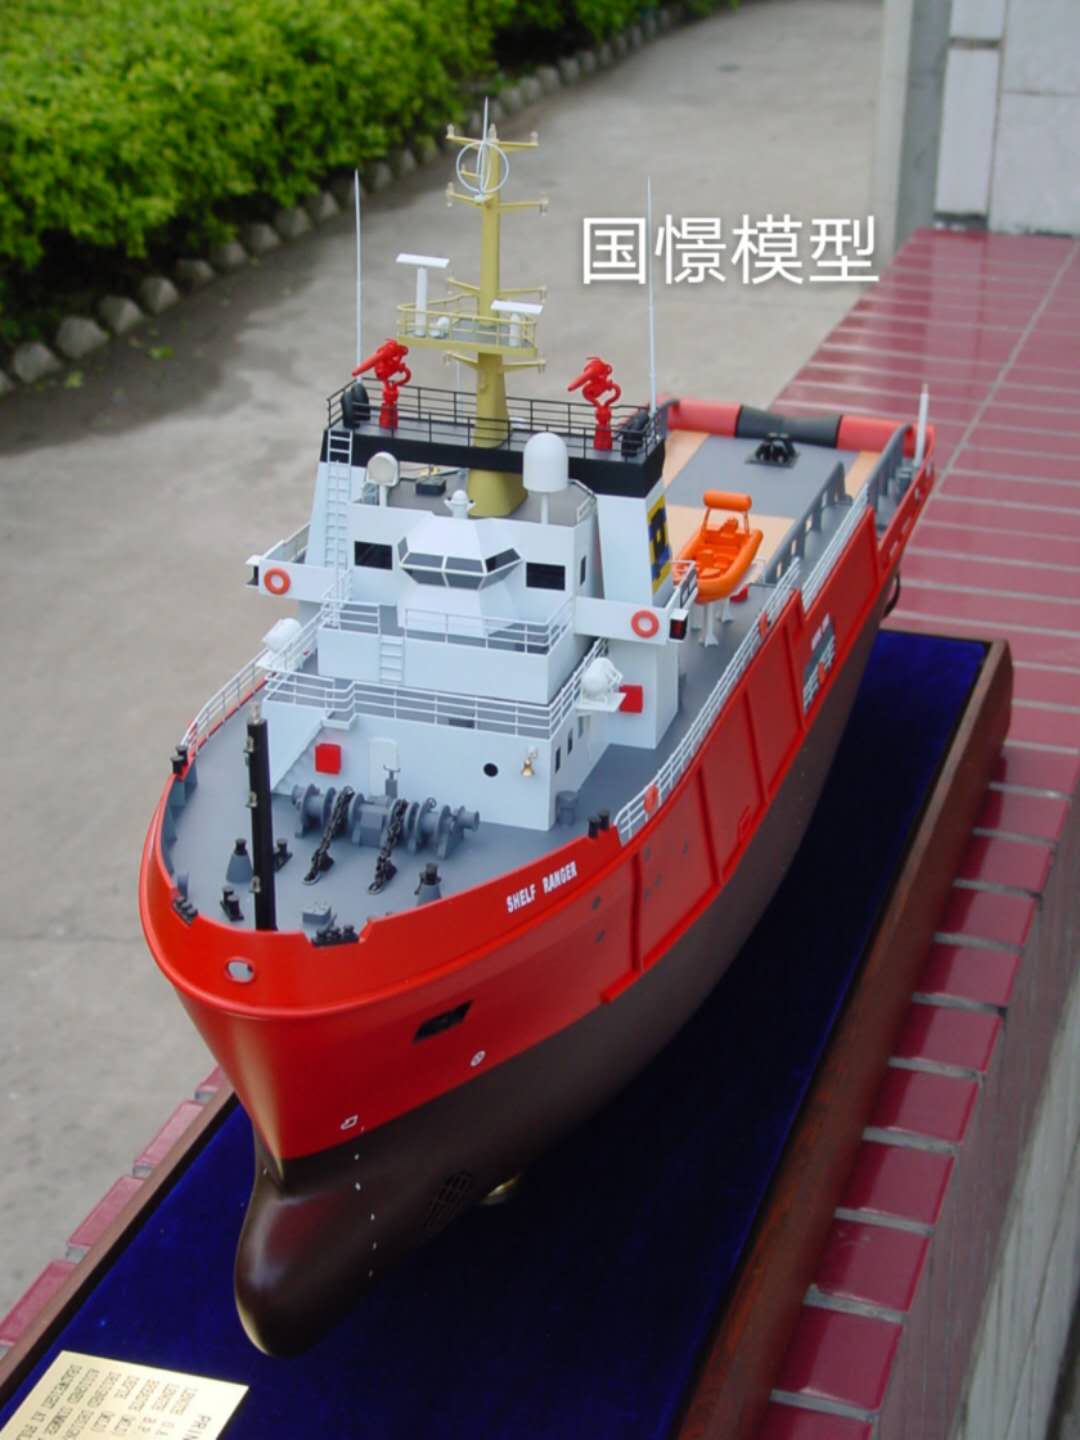 祁阳市船舶模型